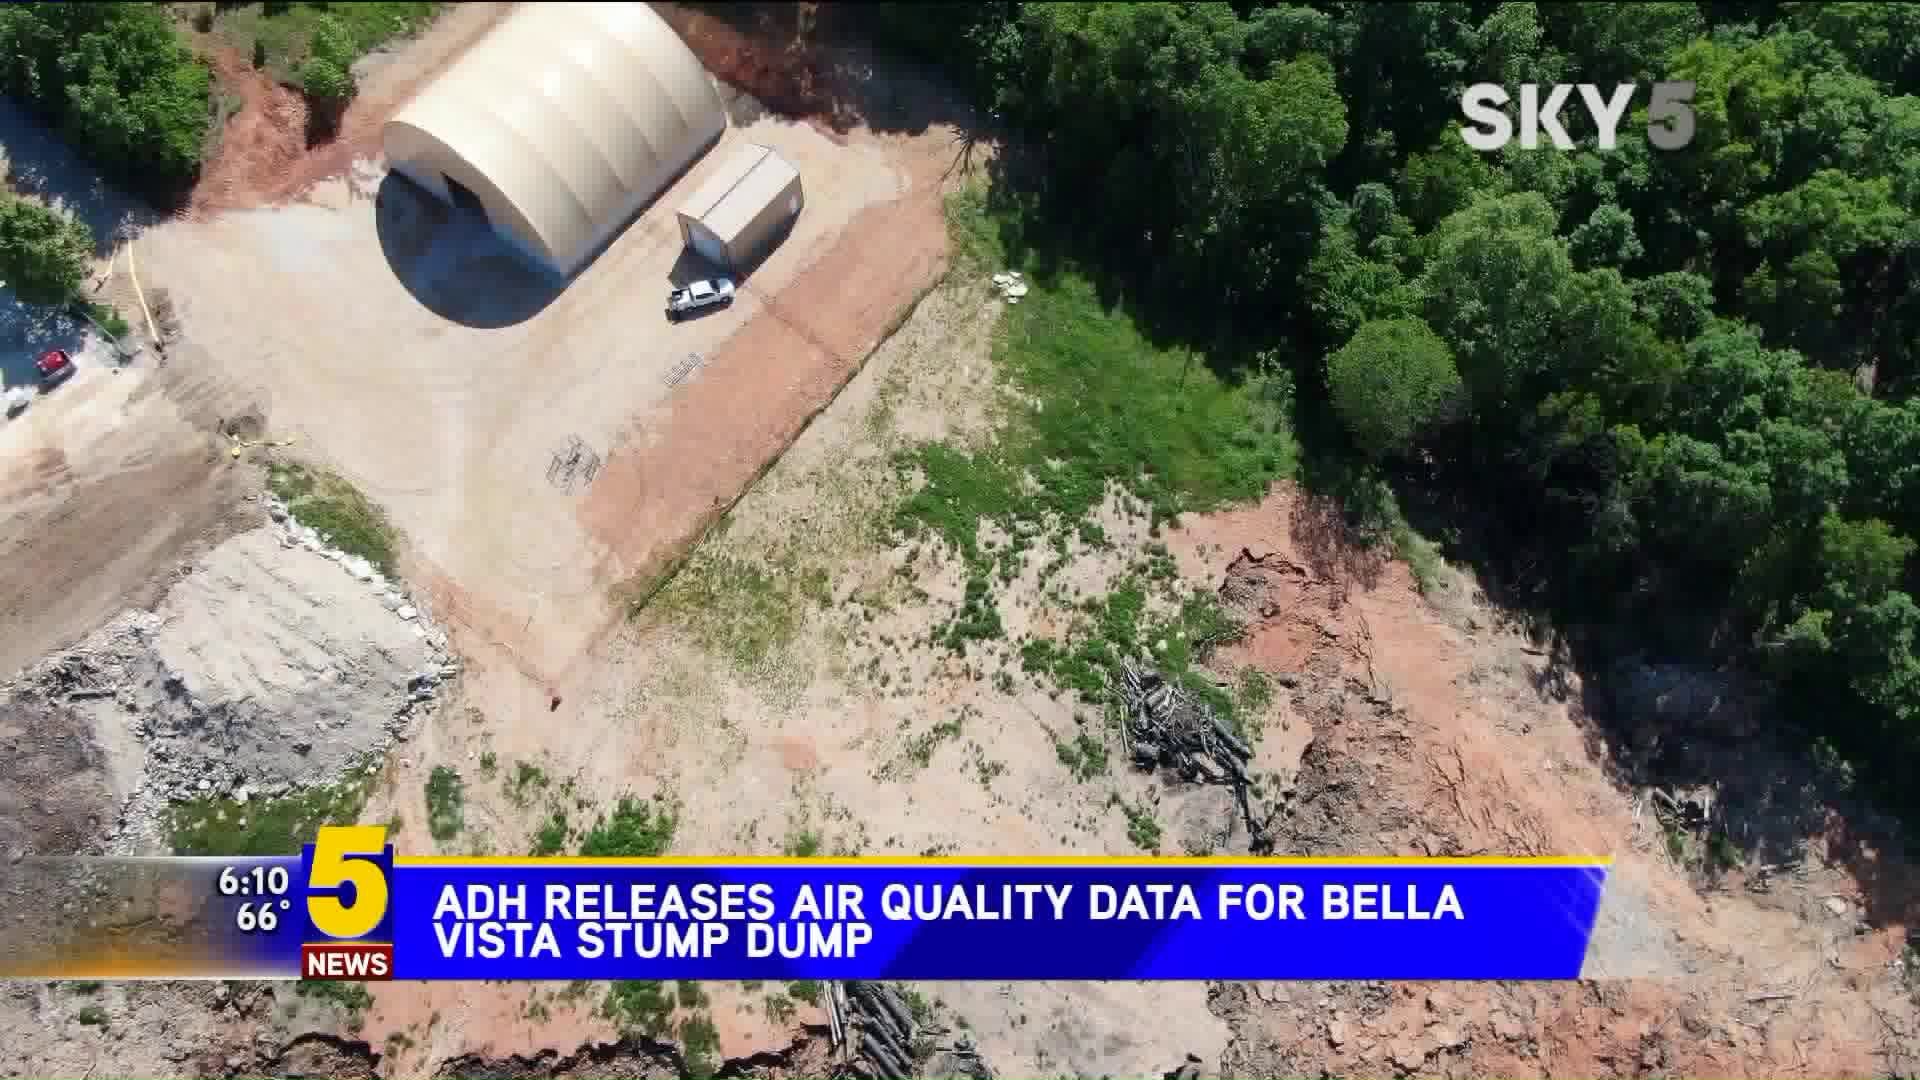 ADH Releases Air Quality Data For Bella Vista Stump Dump